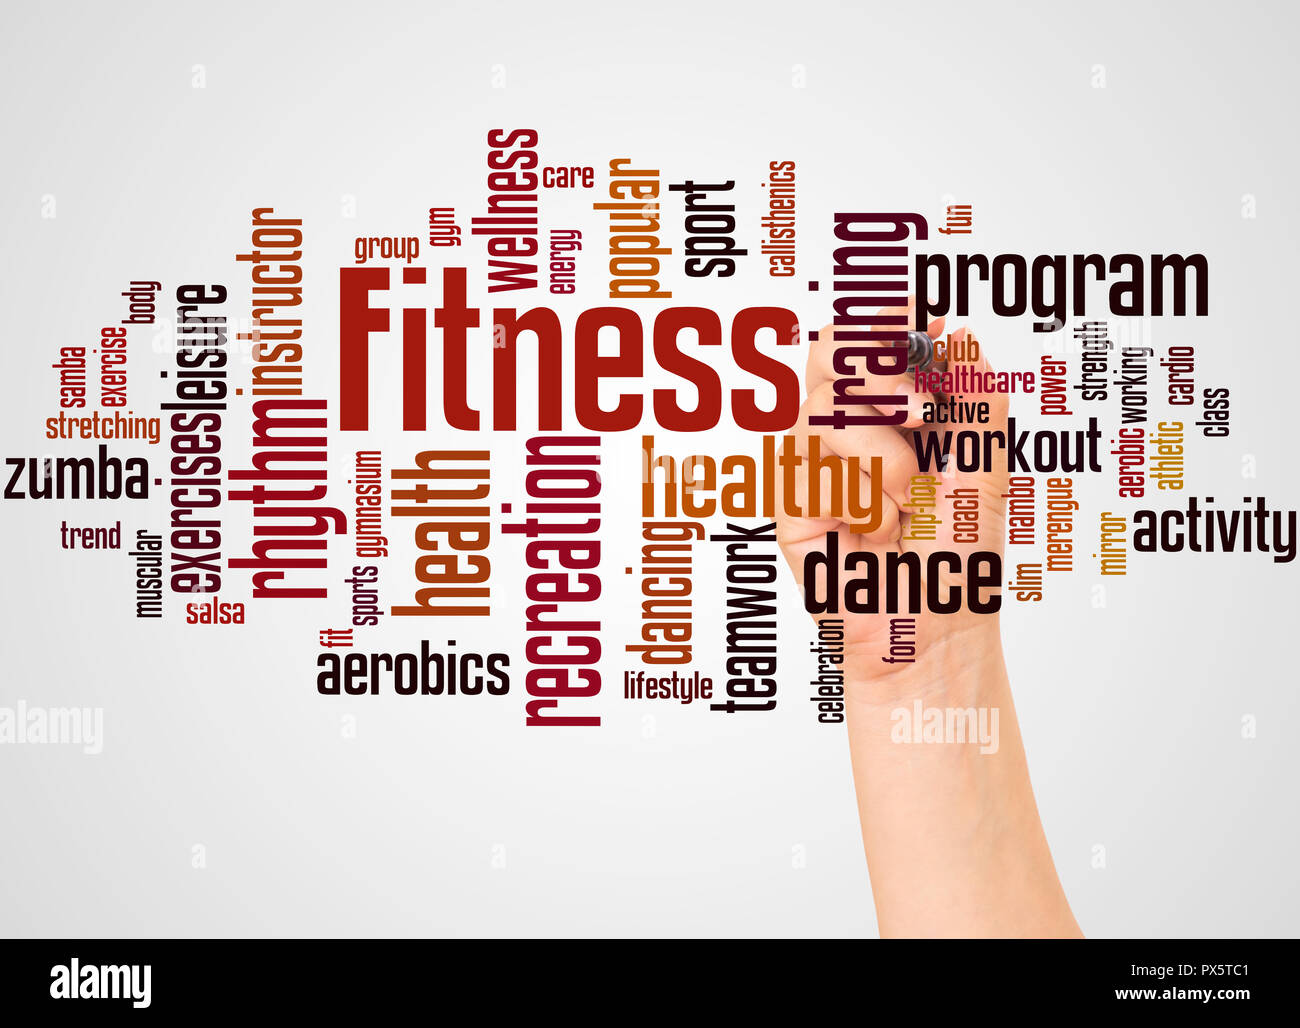 Fitness Wort cloud und Hand mit Marker Konzept auf Farbübergang Hintergrund. Stockfoto